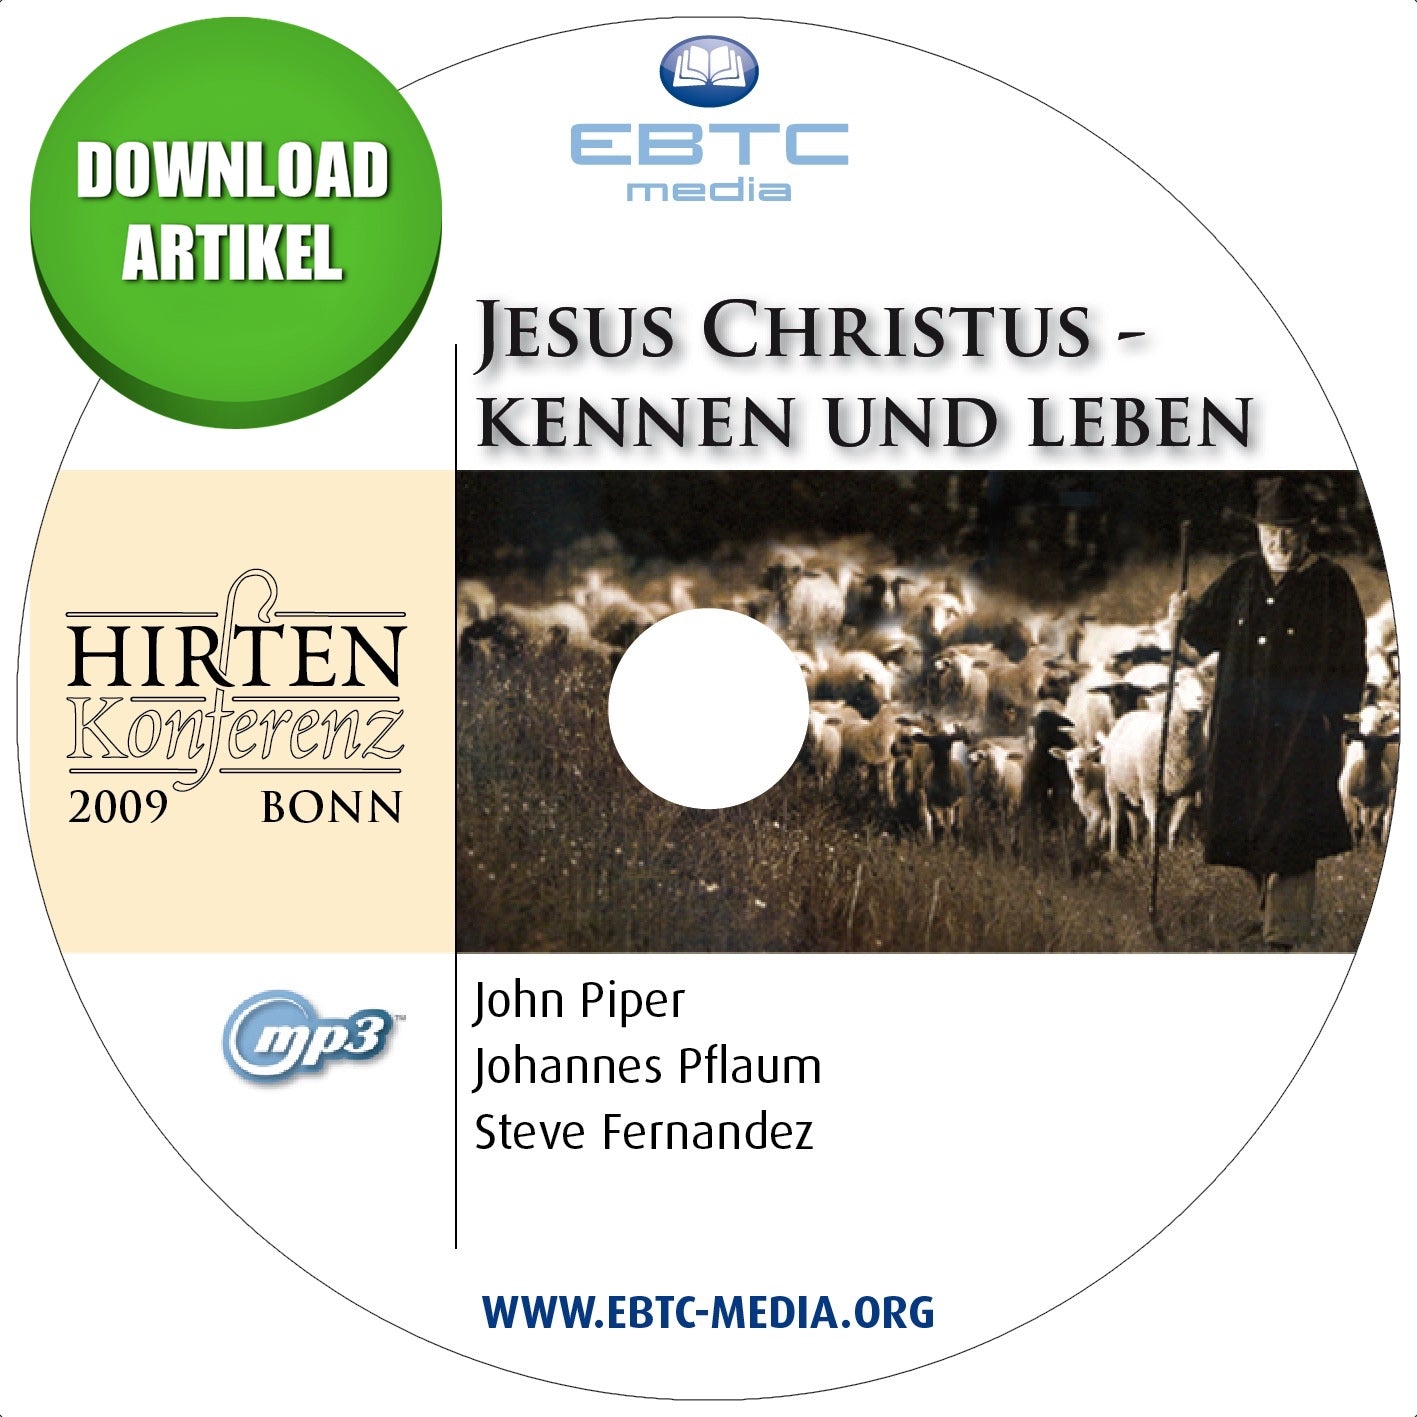 Hirtenkonferenz 2009 - Jesus Christus kennen und leben (MP3 Download)